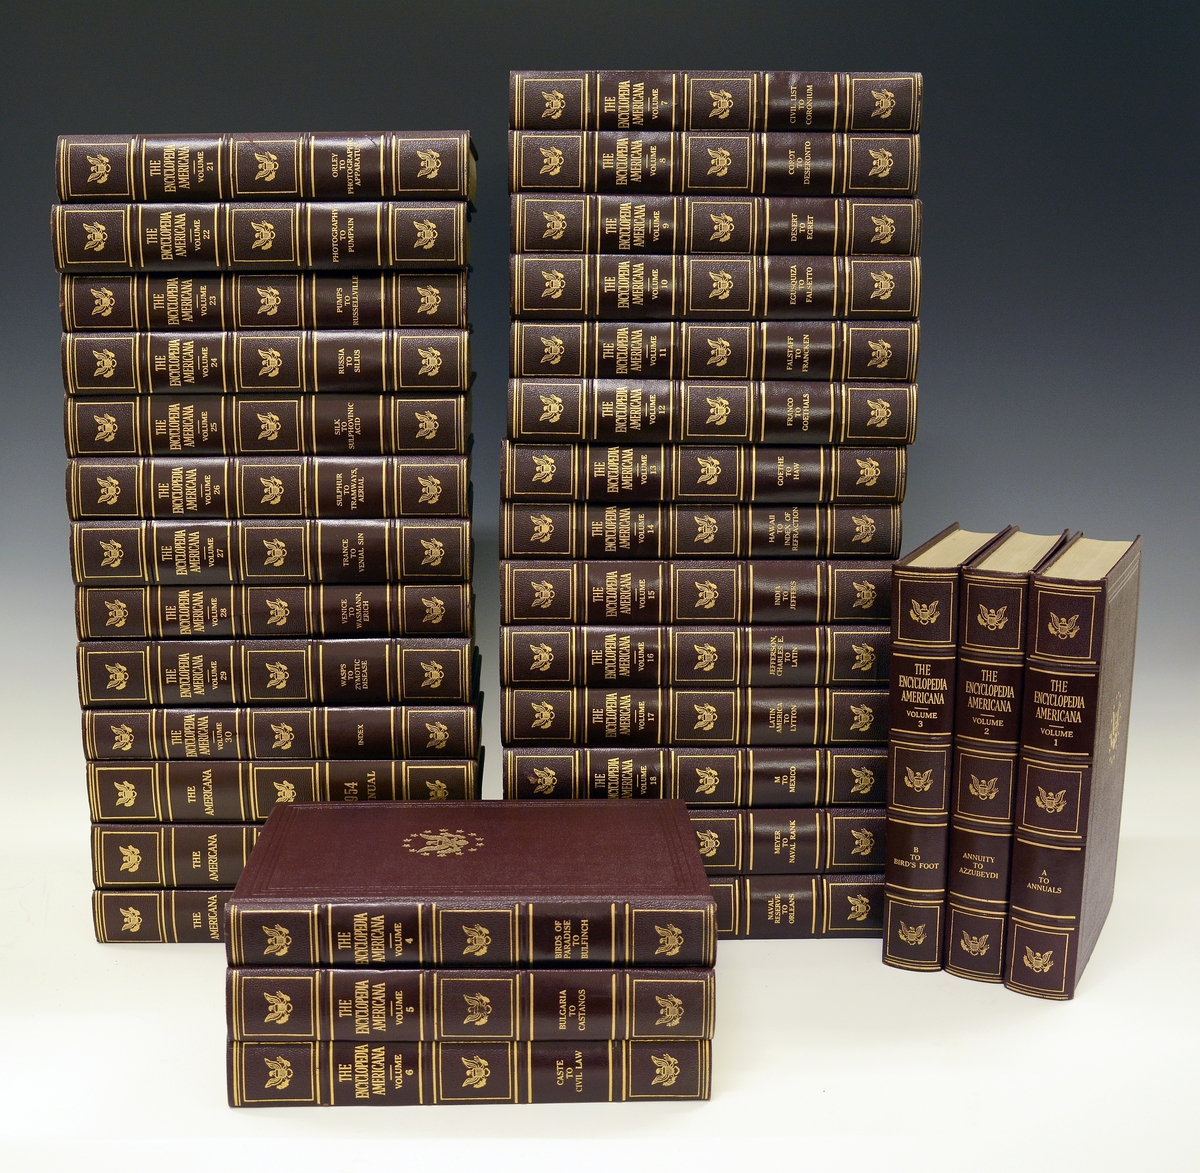 33 bind bøker, amerikansk leksikon, "The Encyclopedia Americana" 1953 i 30 bind, samt tre årstillegg 1954, 1955 og 1956. Mørk burgunder innbinding med gulldekor.